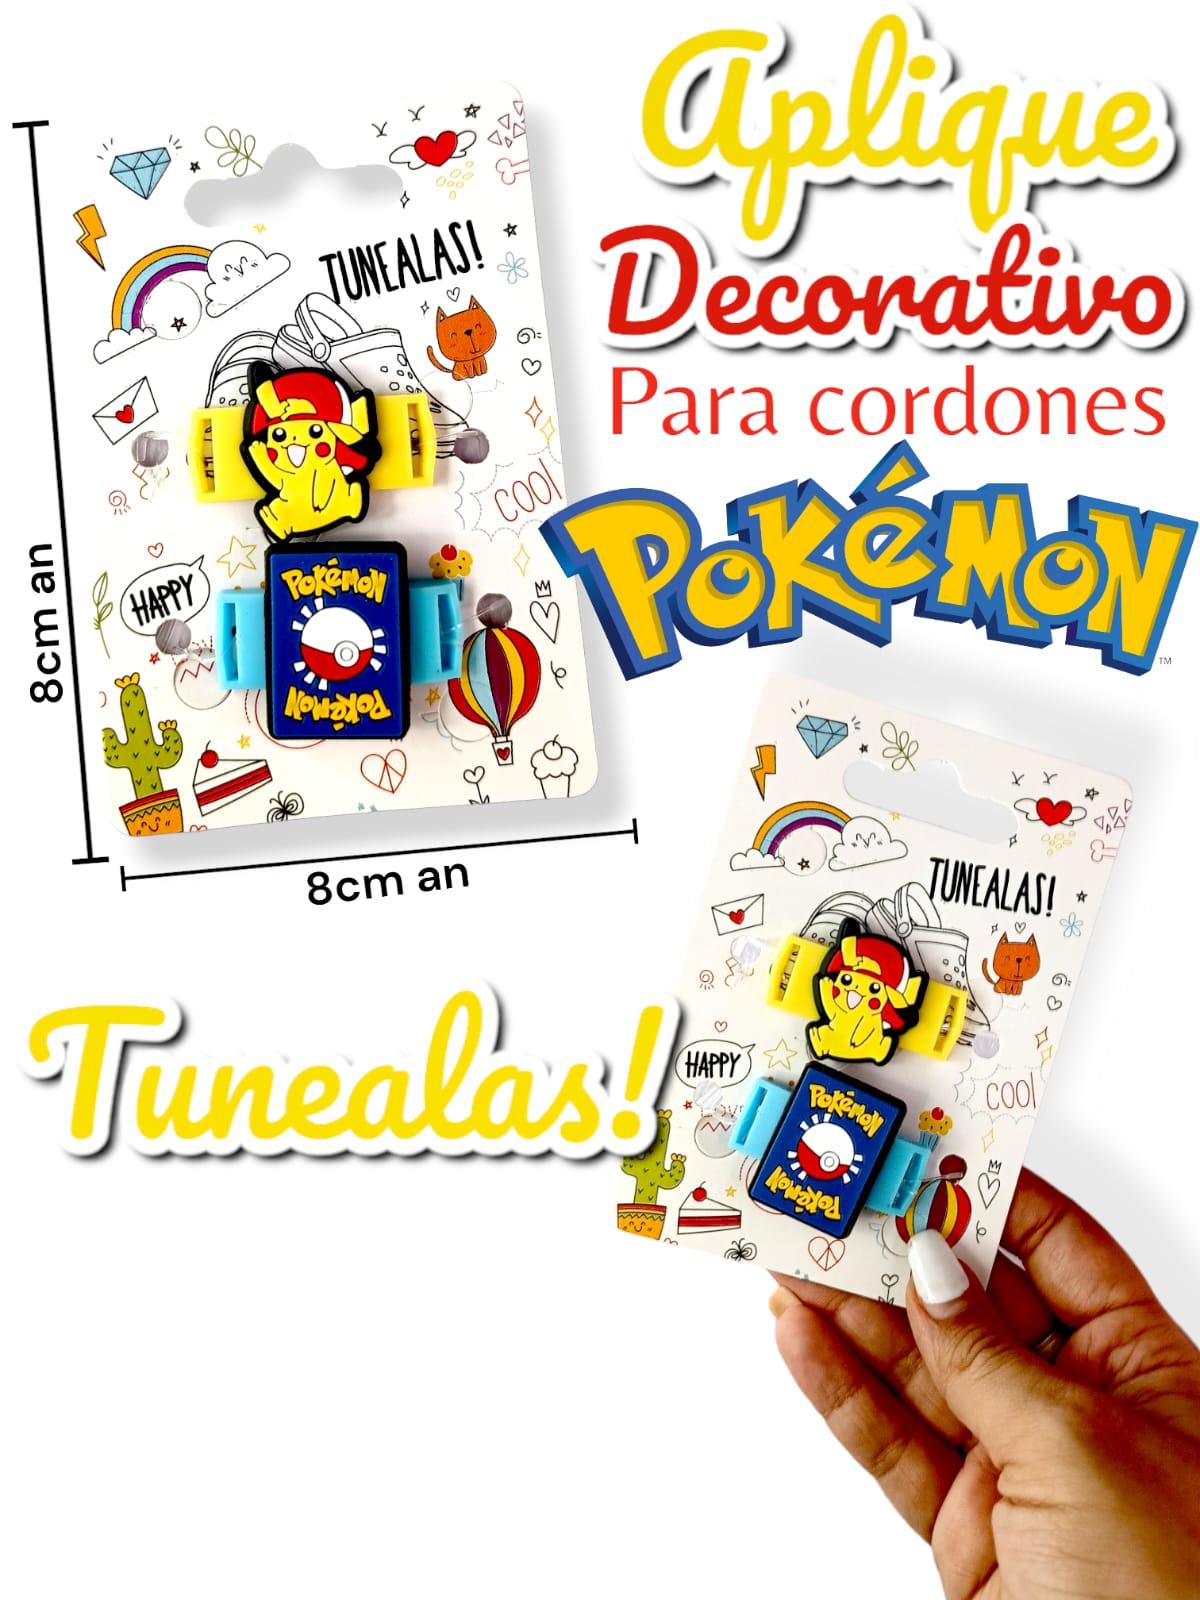 Aplique Decorativo Para Cordones Pokemon TUNEALAS